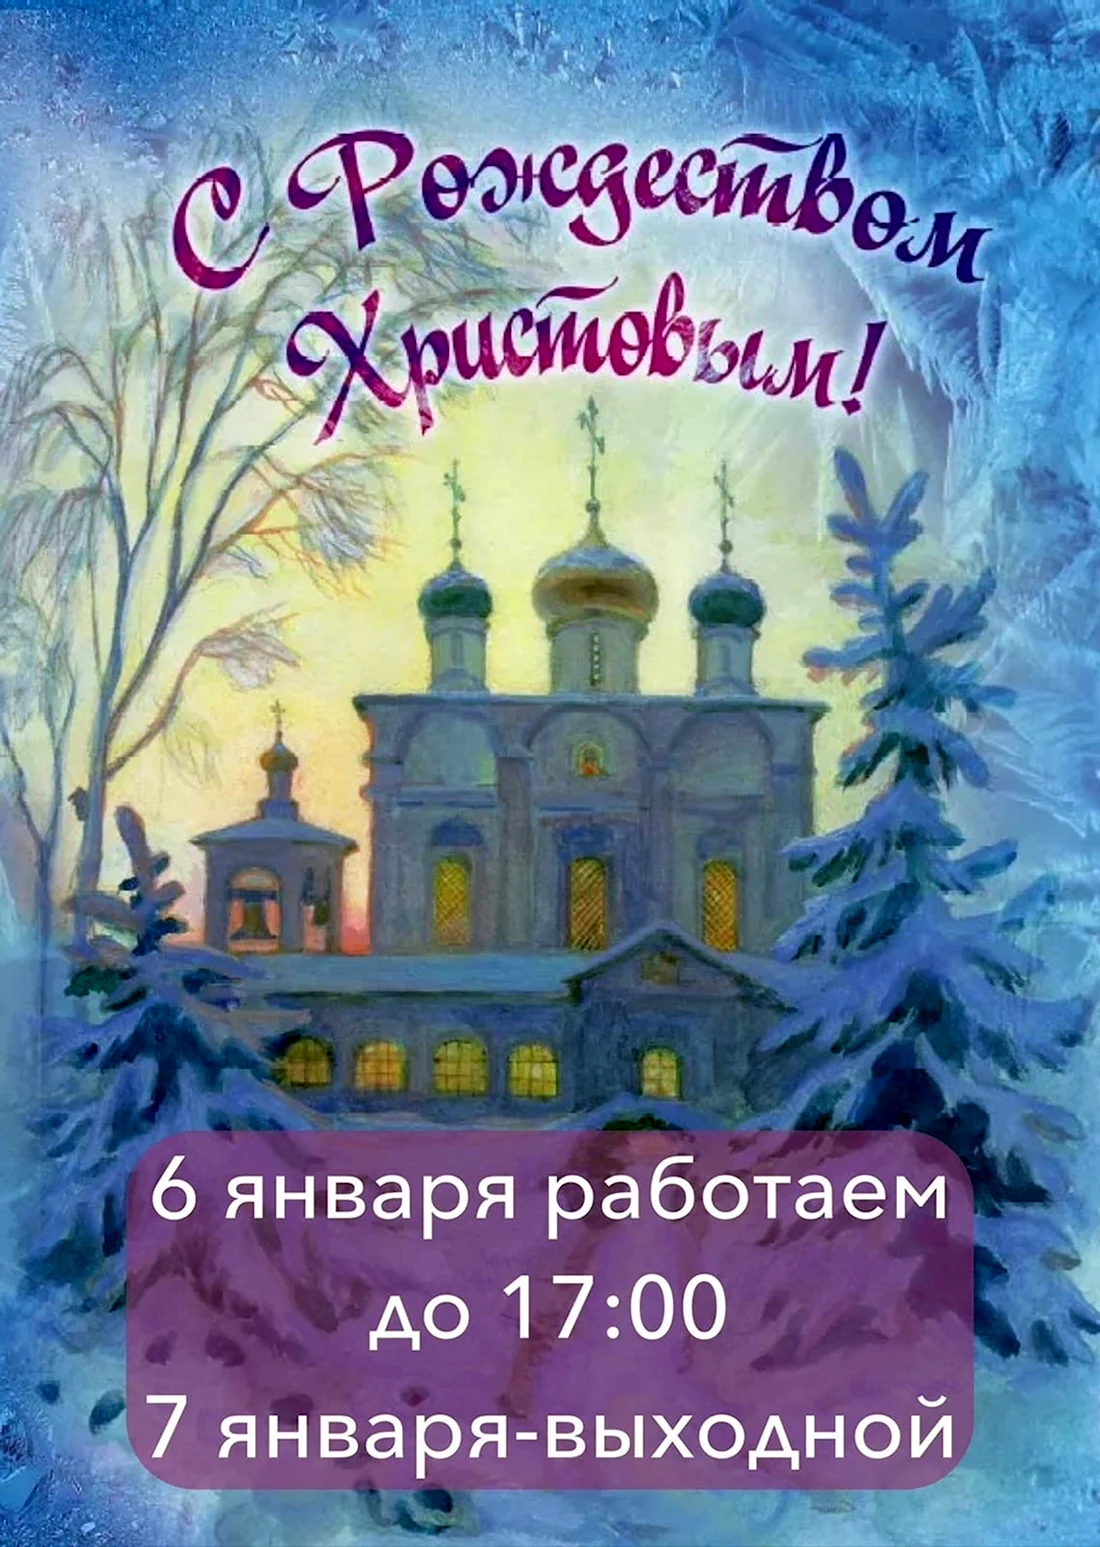 Сретенский монастырь Рождество Христово